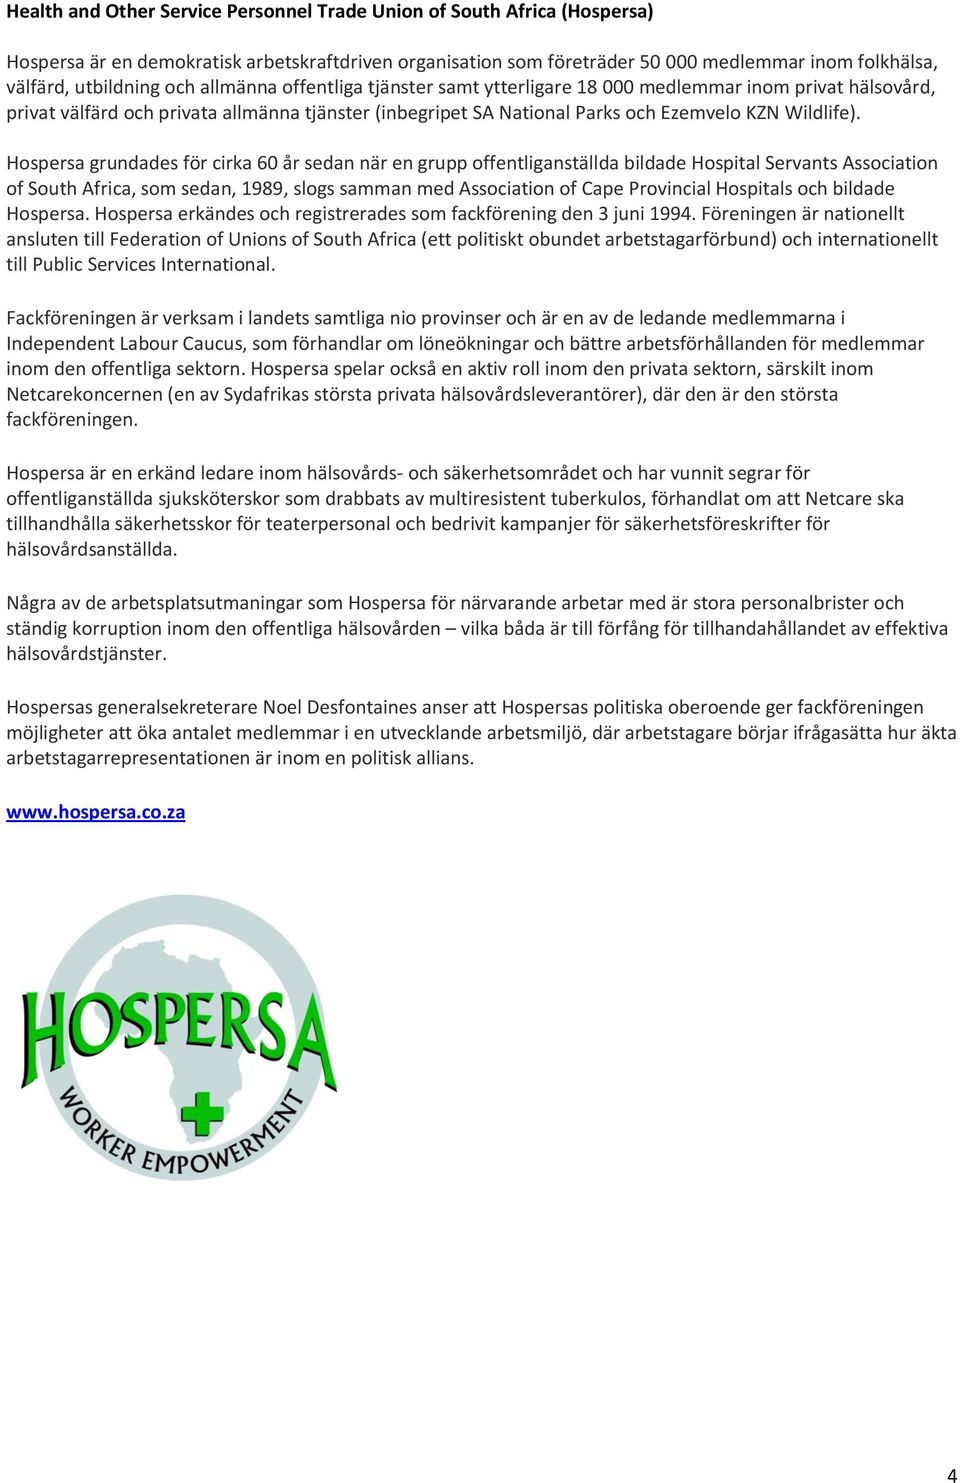 Hospersa grundades för cirka 60 år sedan när en grupp offentliganställda bildade Hospital Servants Association of South Africa, som sedan, 1989, slogs samman med Association of Cape Provincial